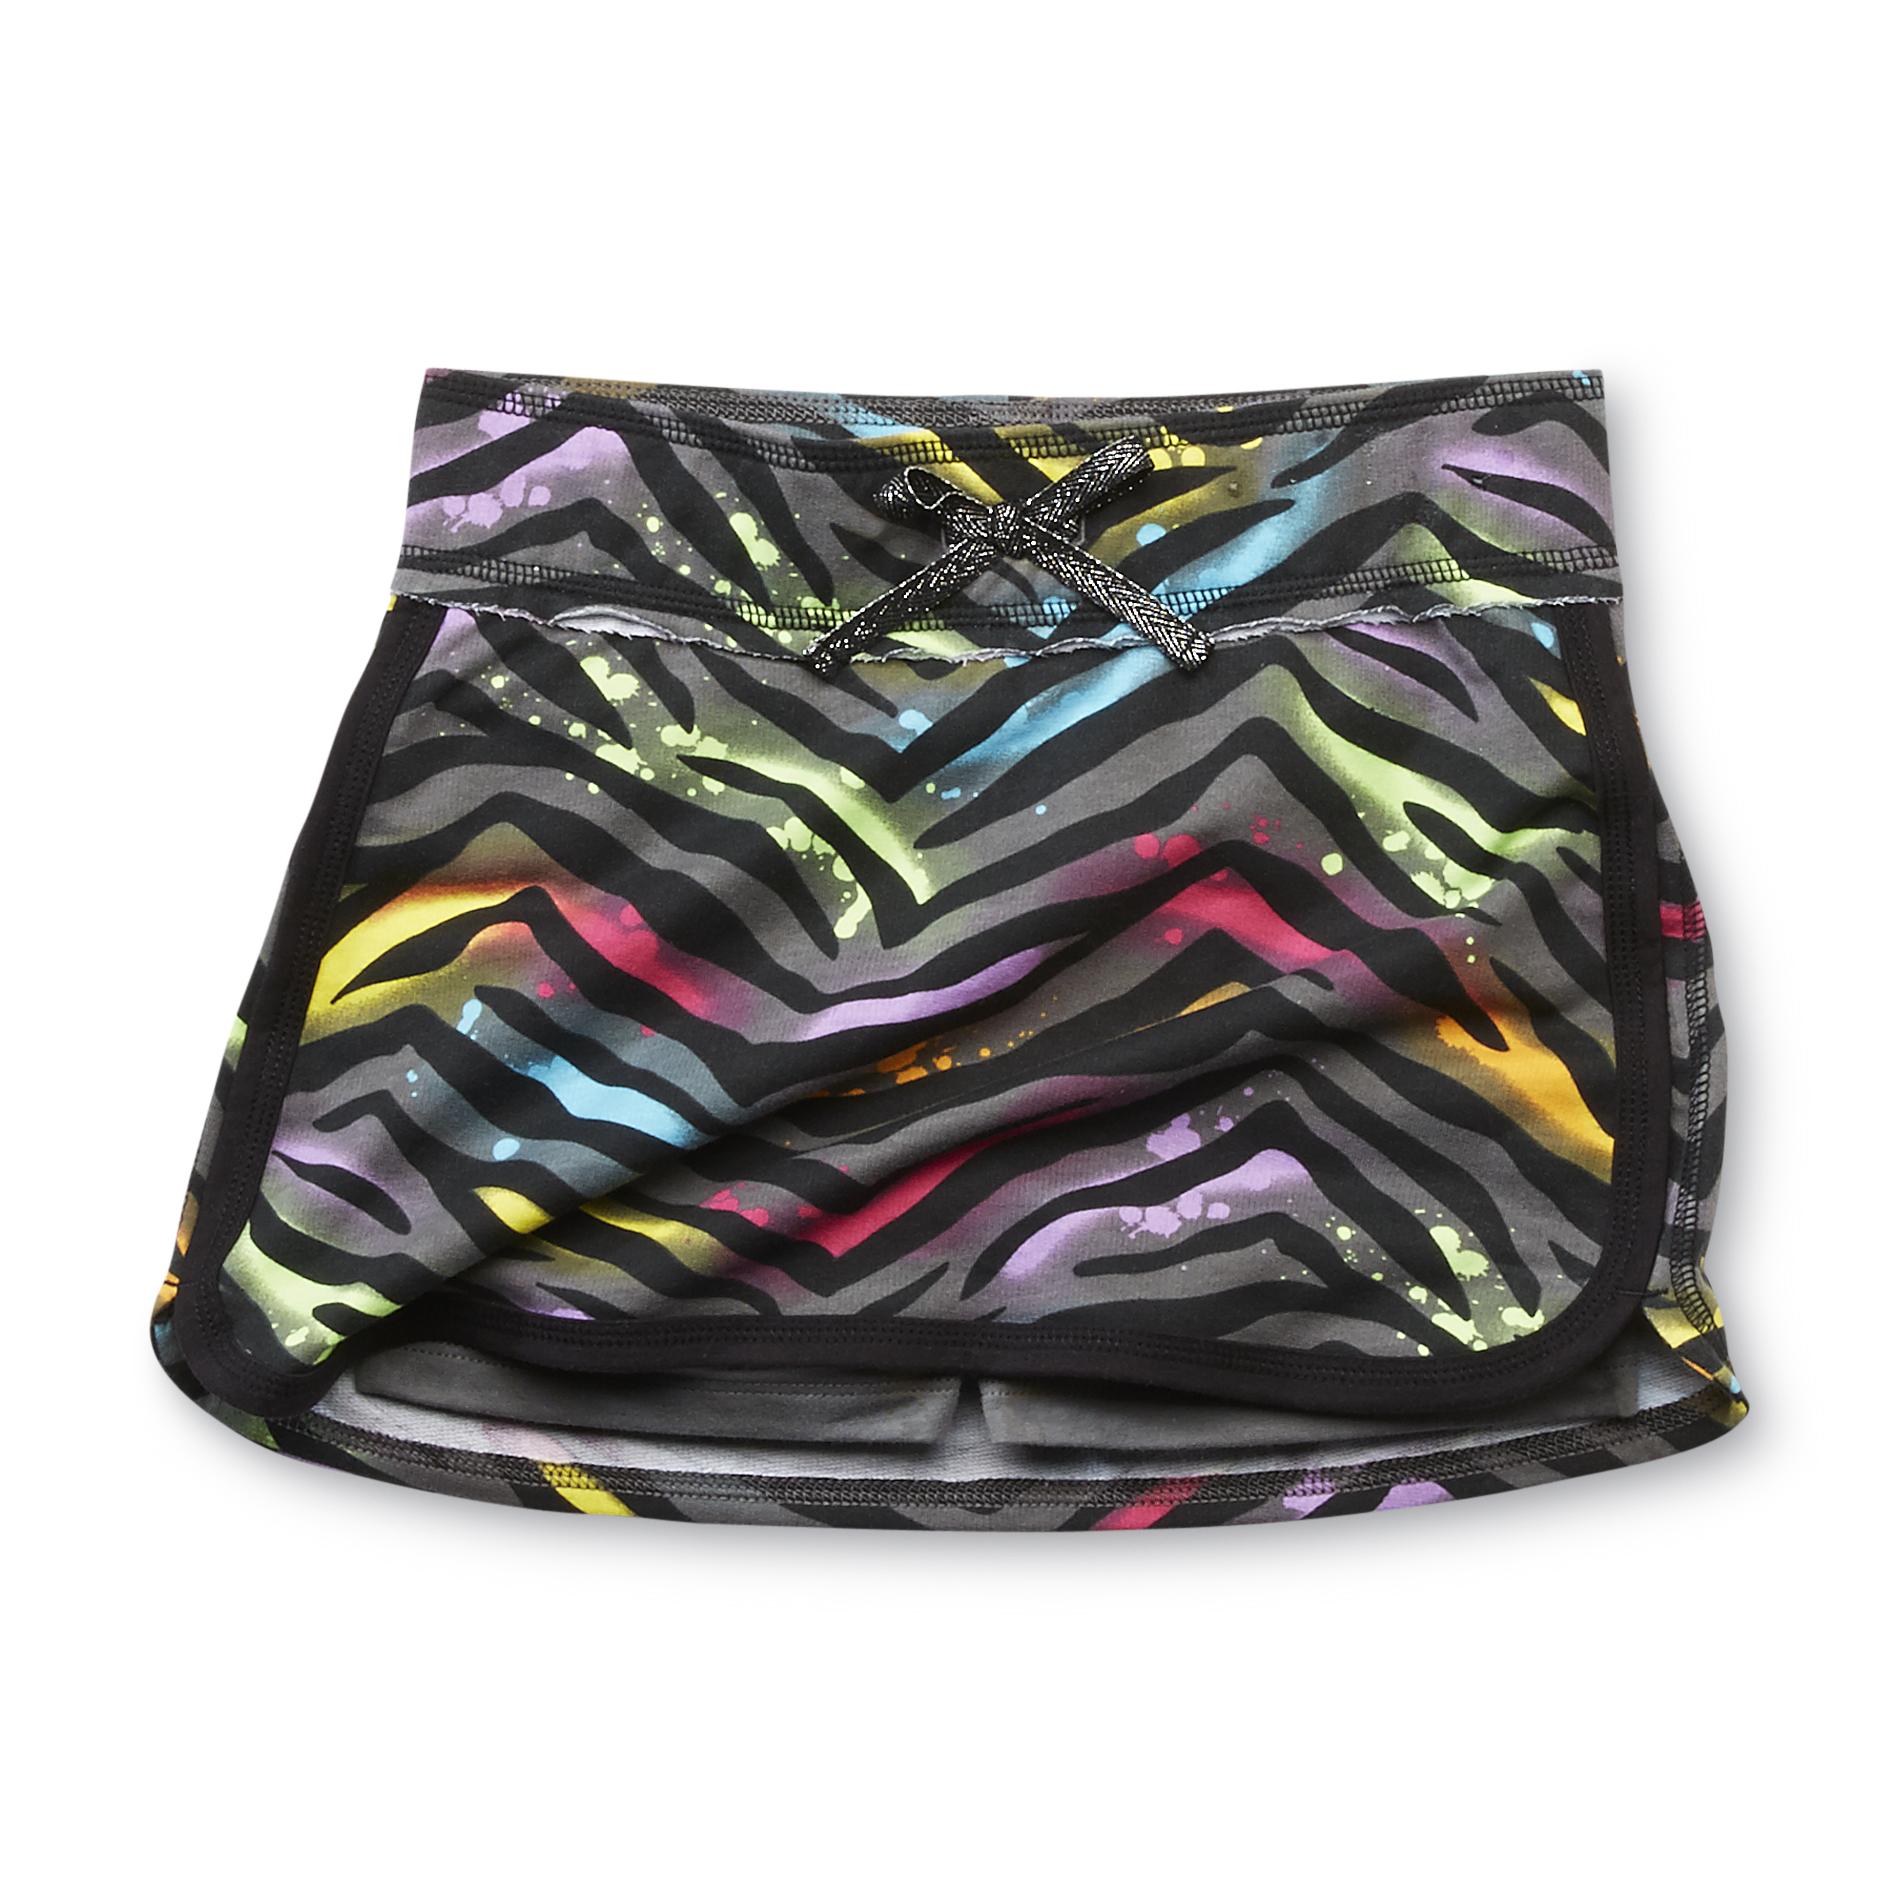 Basic Editions Girl's Scooter Skirt - Zebra Print